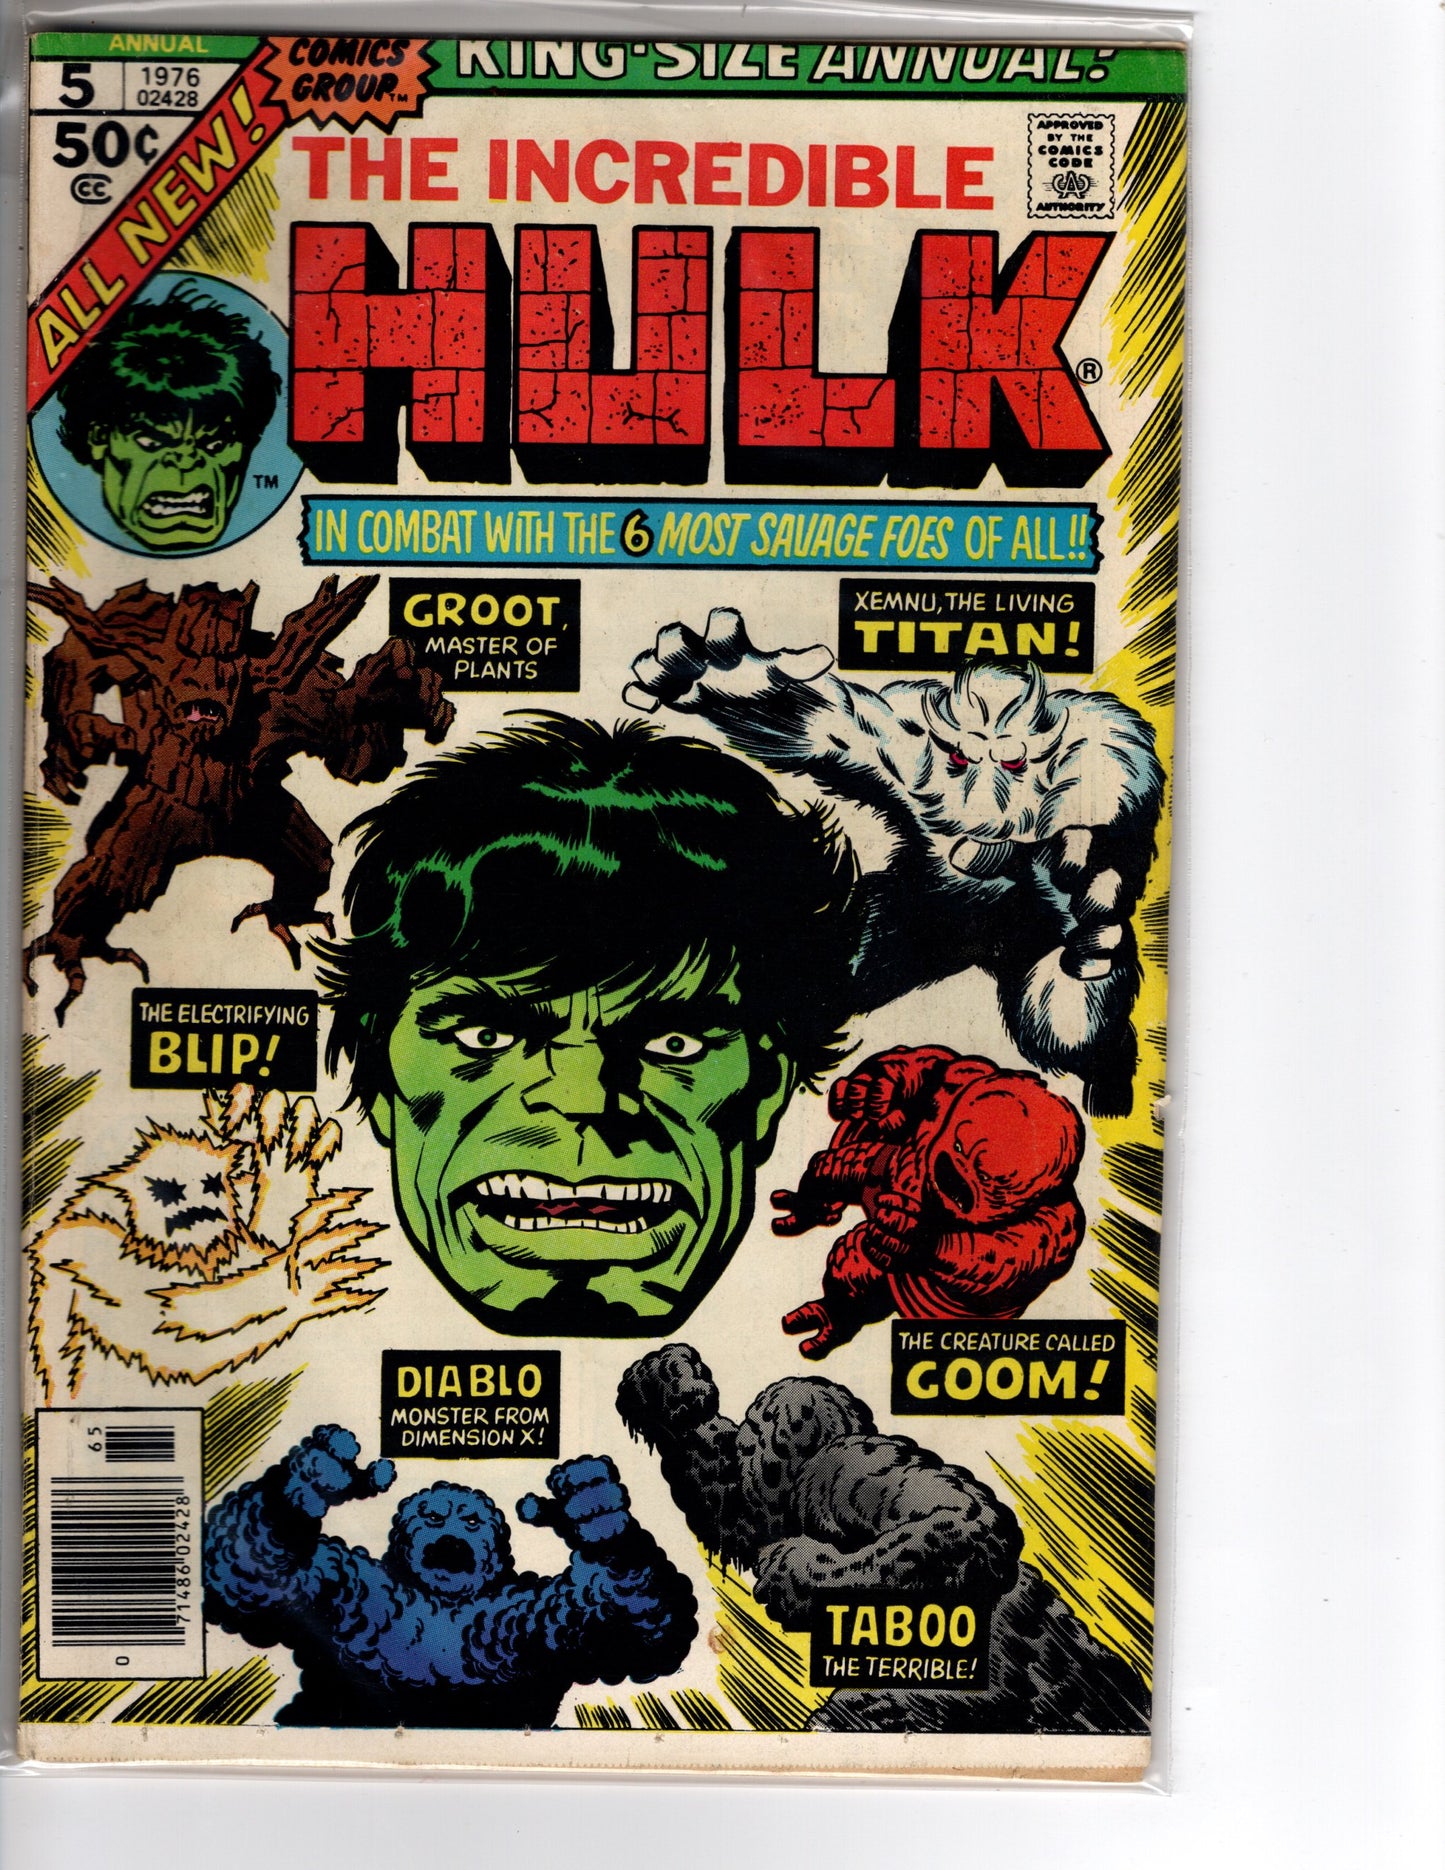 The Incredible Hulk Annual #5